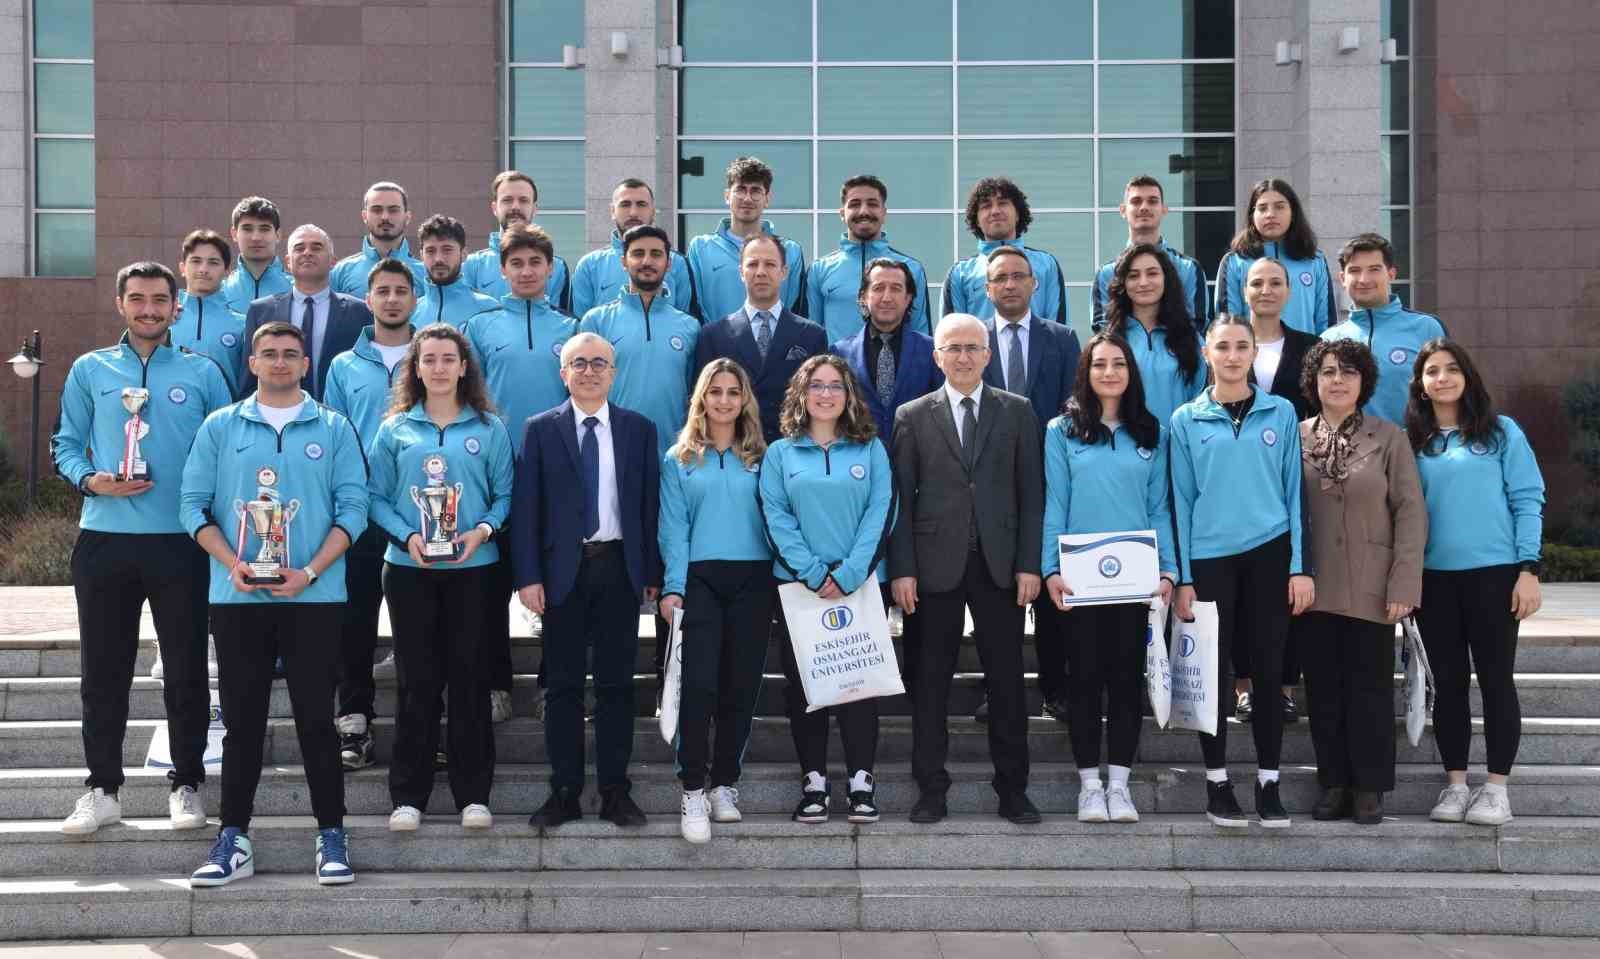 Üniversitelerarası Spor Müsabakaları’nda başarılı olan ESOGÜ sporcuları kupalarını Rektör Prof. Dr. Kamil Çolak’a sundu